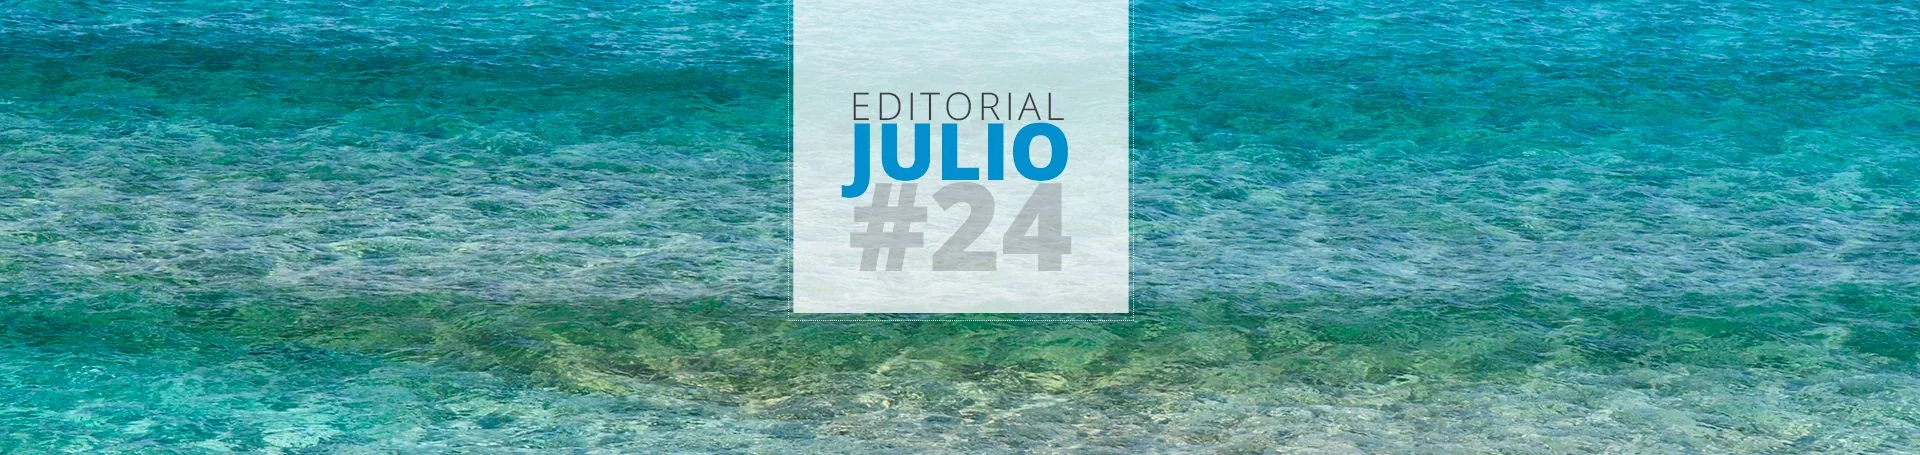 Editorial Julio:  Muy buen 1er semestre | Ahora a cargar pilas